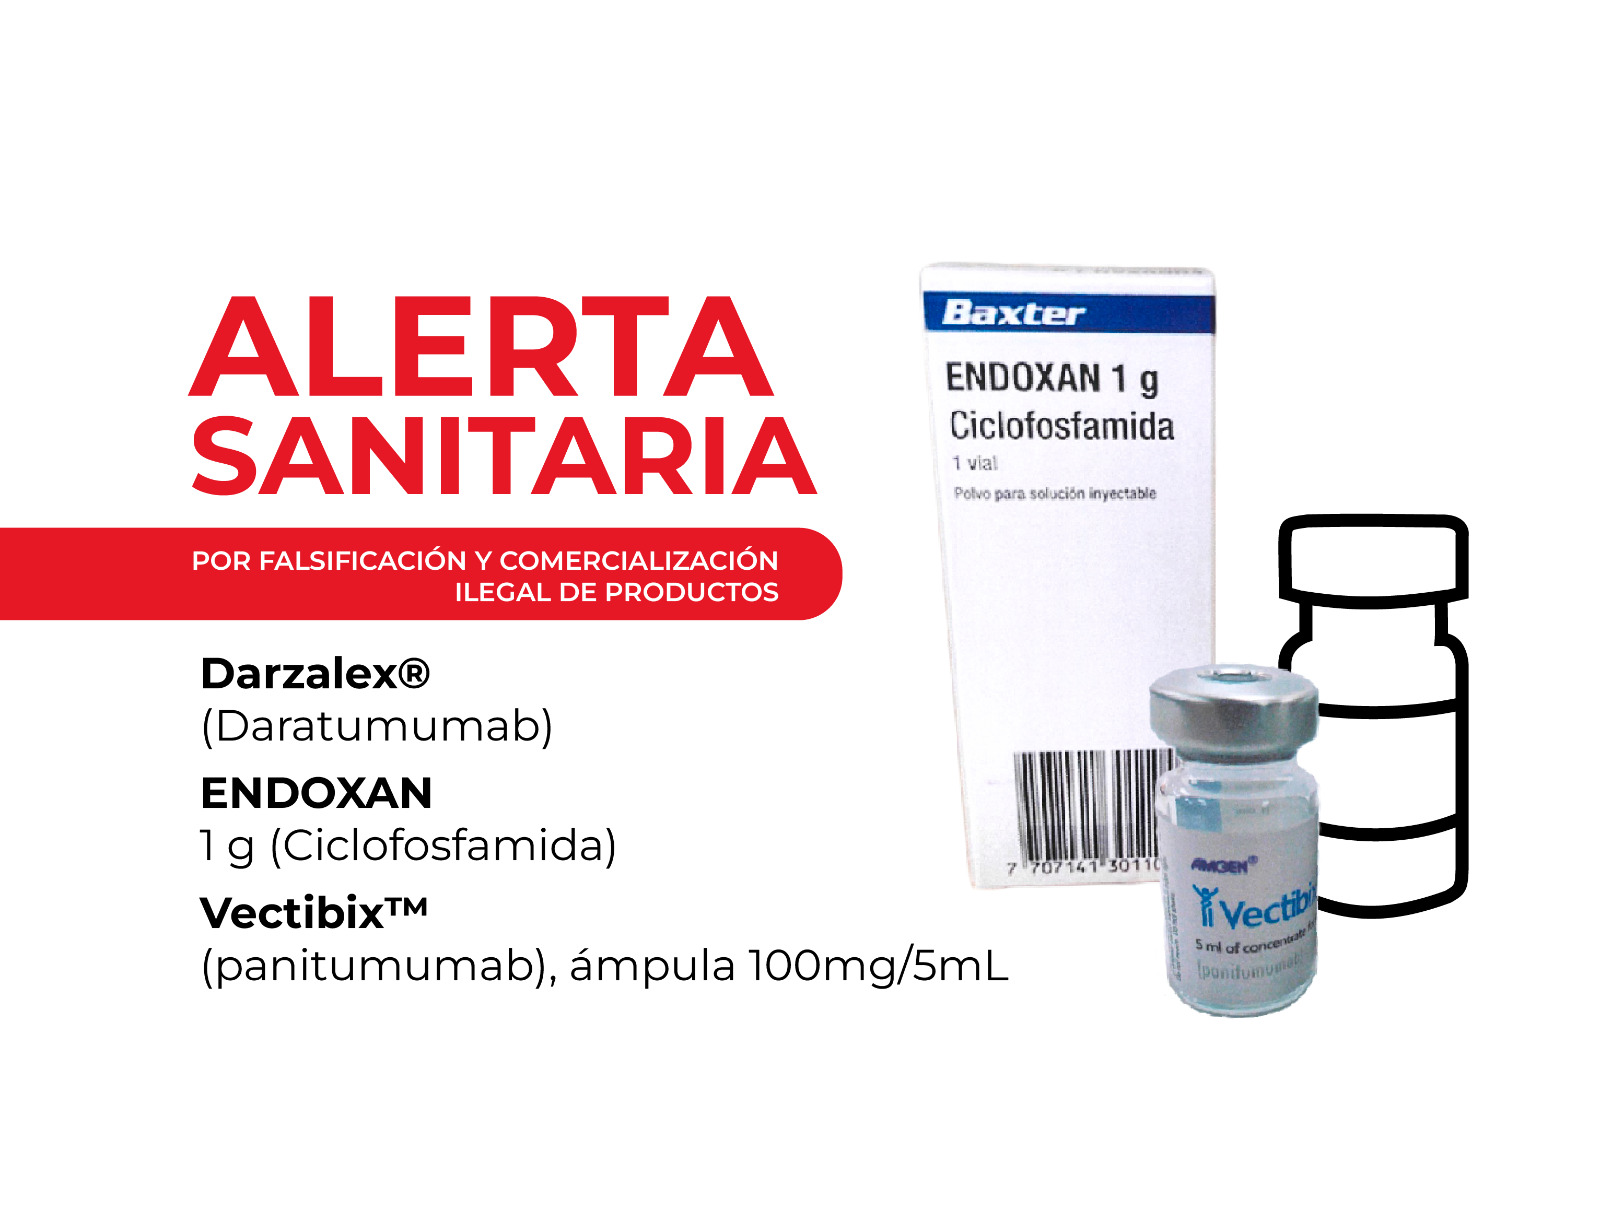 Cofepris alerta por falsificación y comercialización ilegal de medicamentos oncológicos